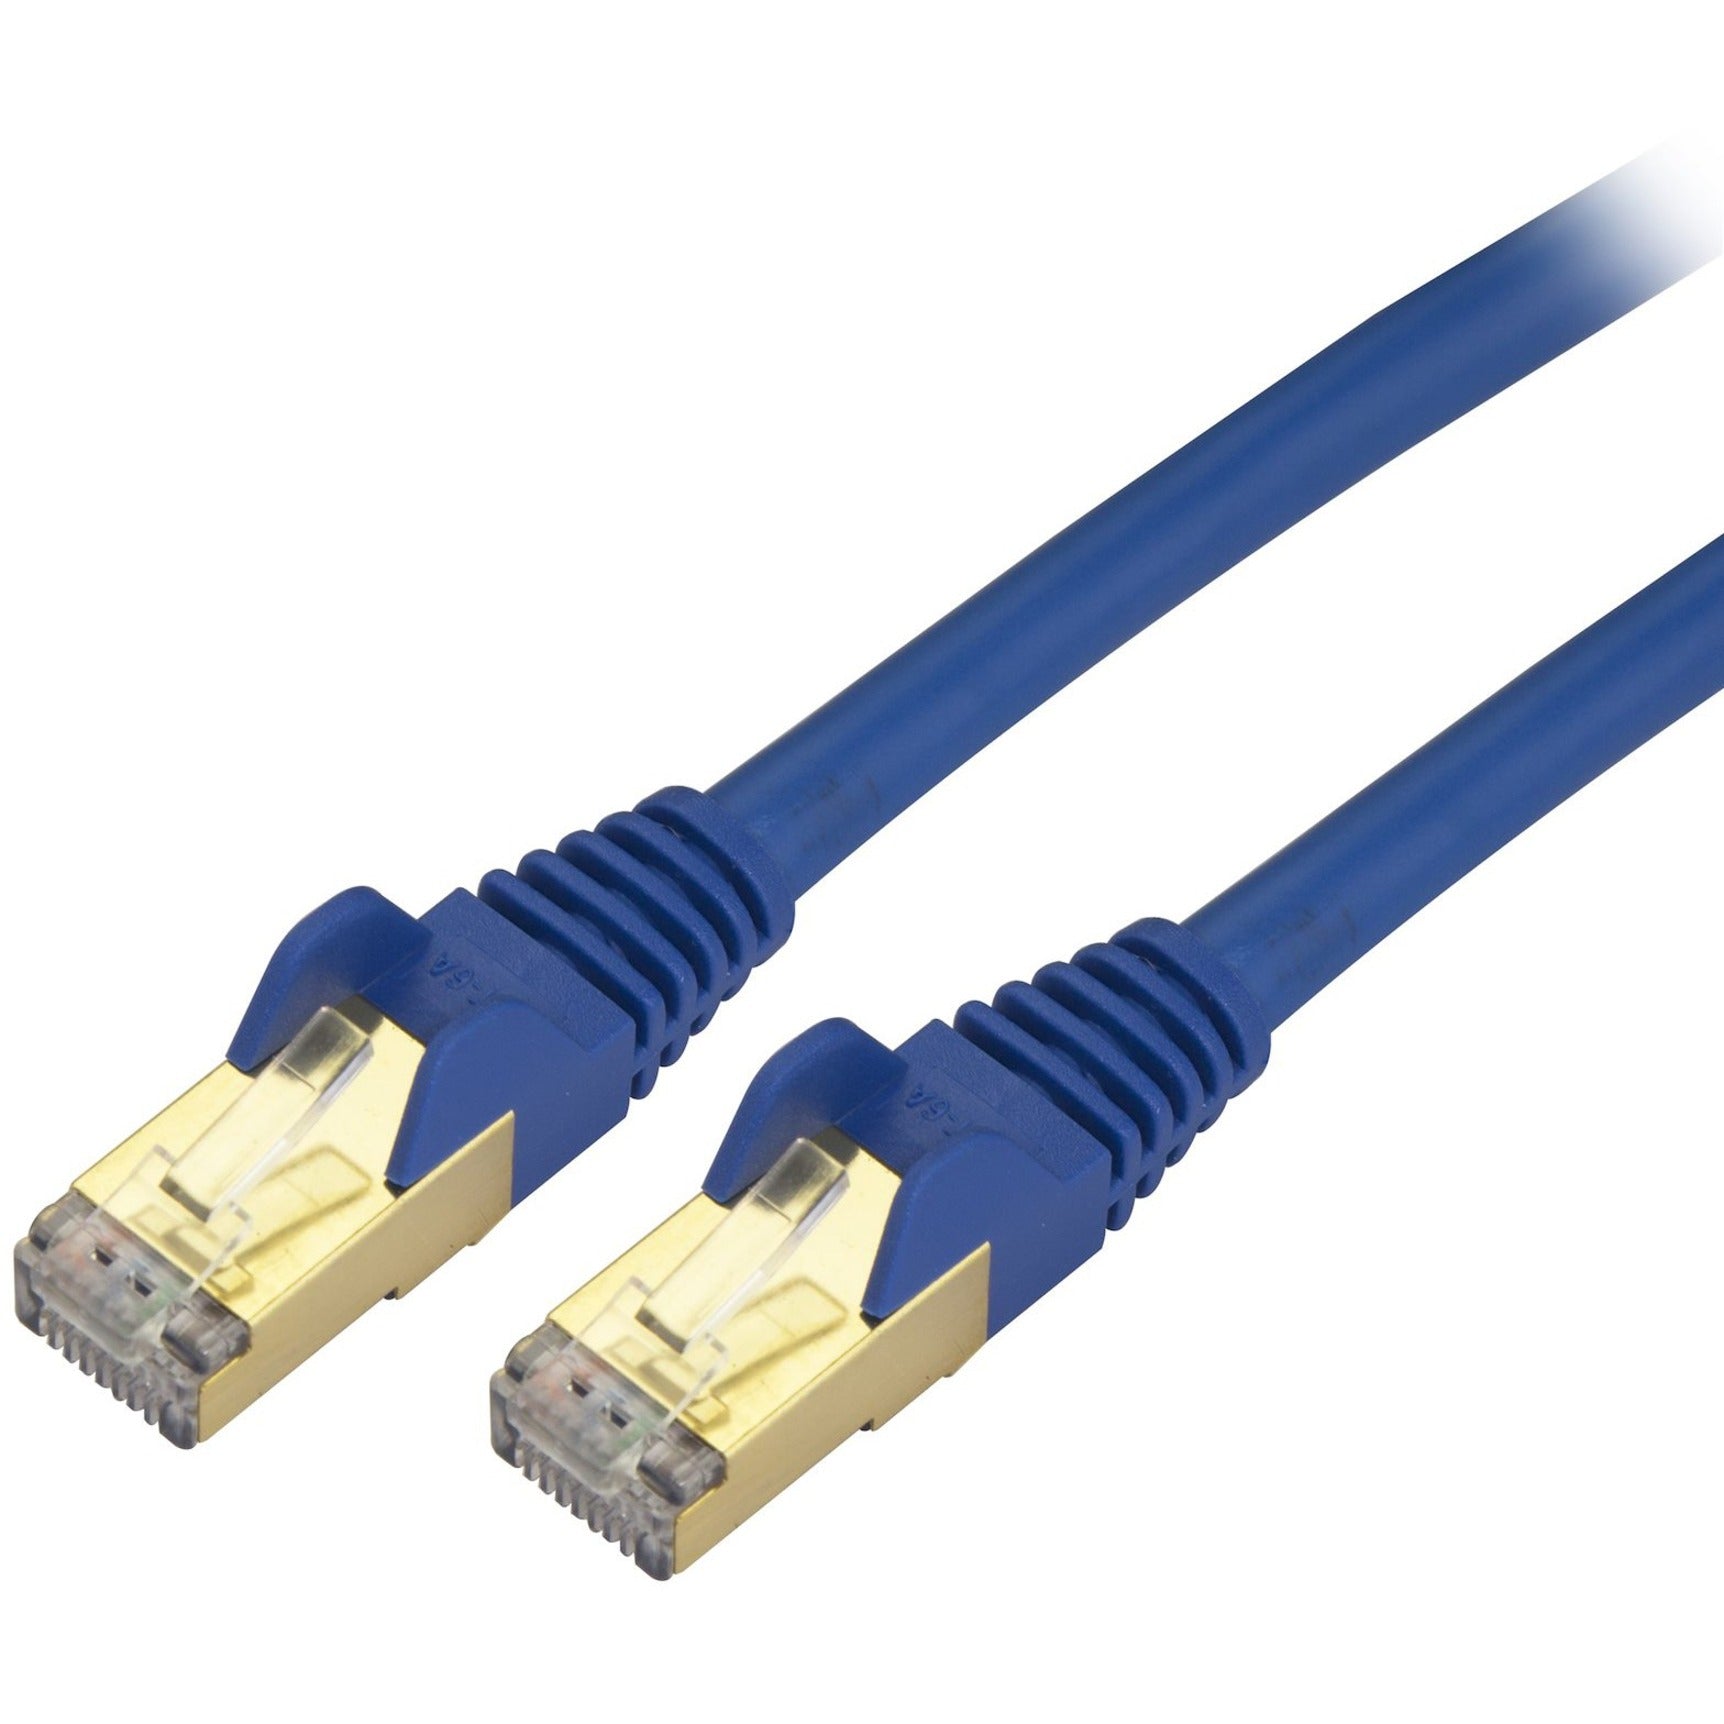 StarTech.com C6ASPAT20BL Cat6a Ethernet Patch Cable - Shielded (STP) - 20 ft., Blue, Long Ethernet Cord